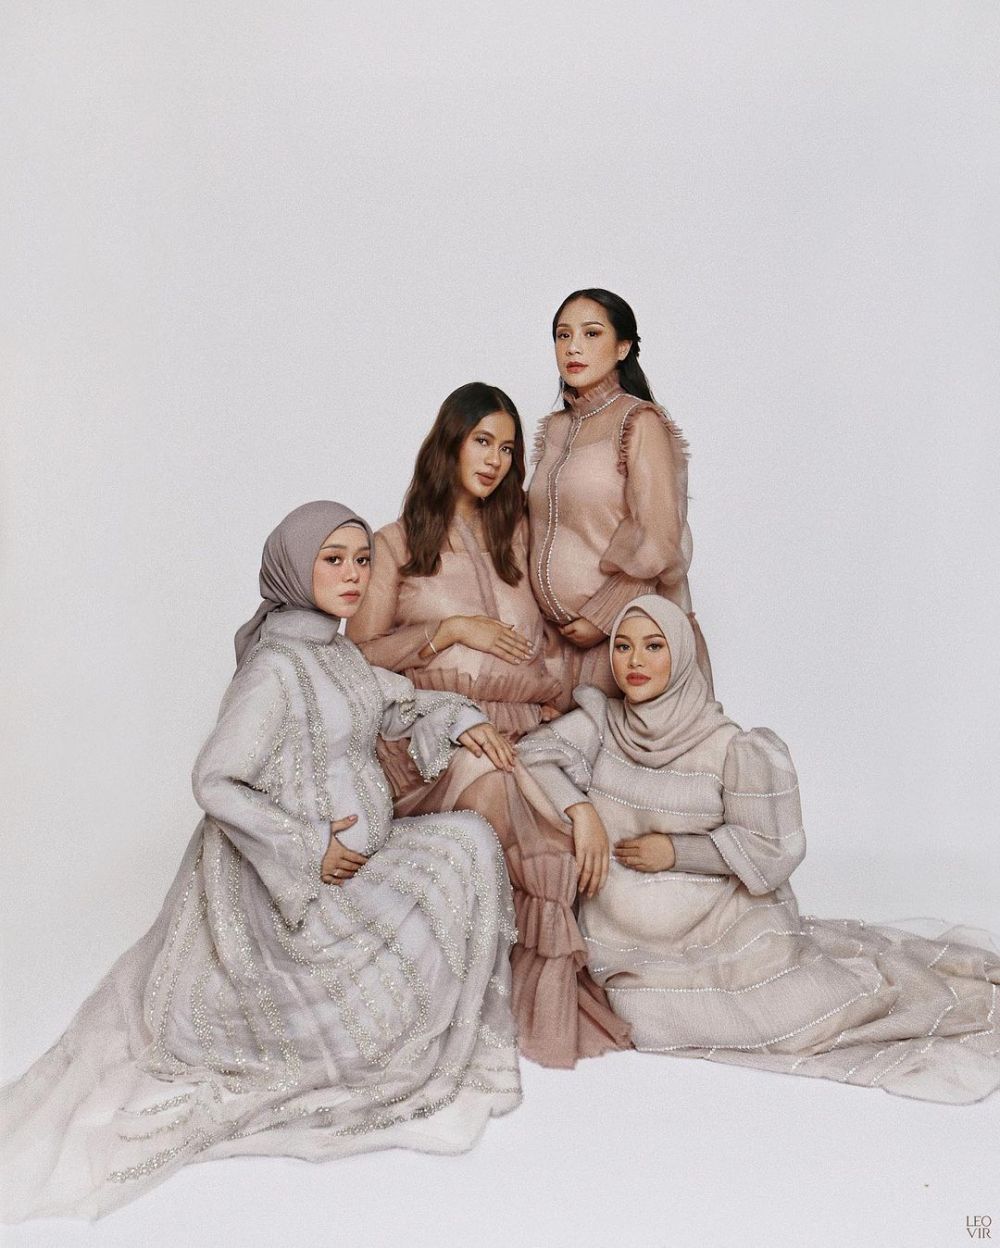 Gaya maternity shoot 7 geng seleb, Nagita Slavina & The Bumils kompak